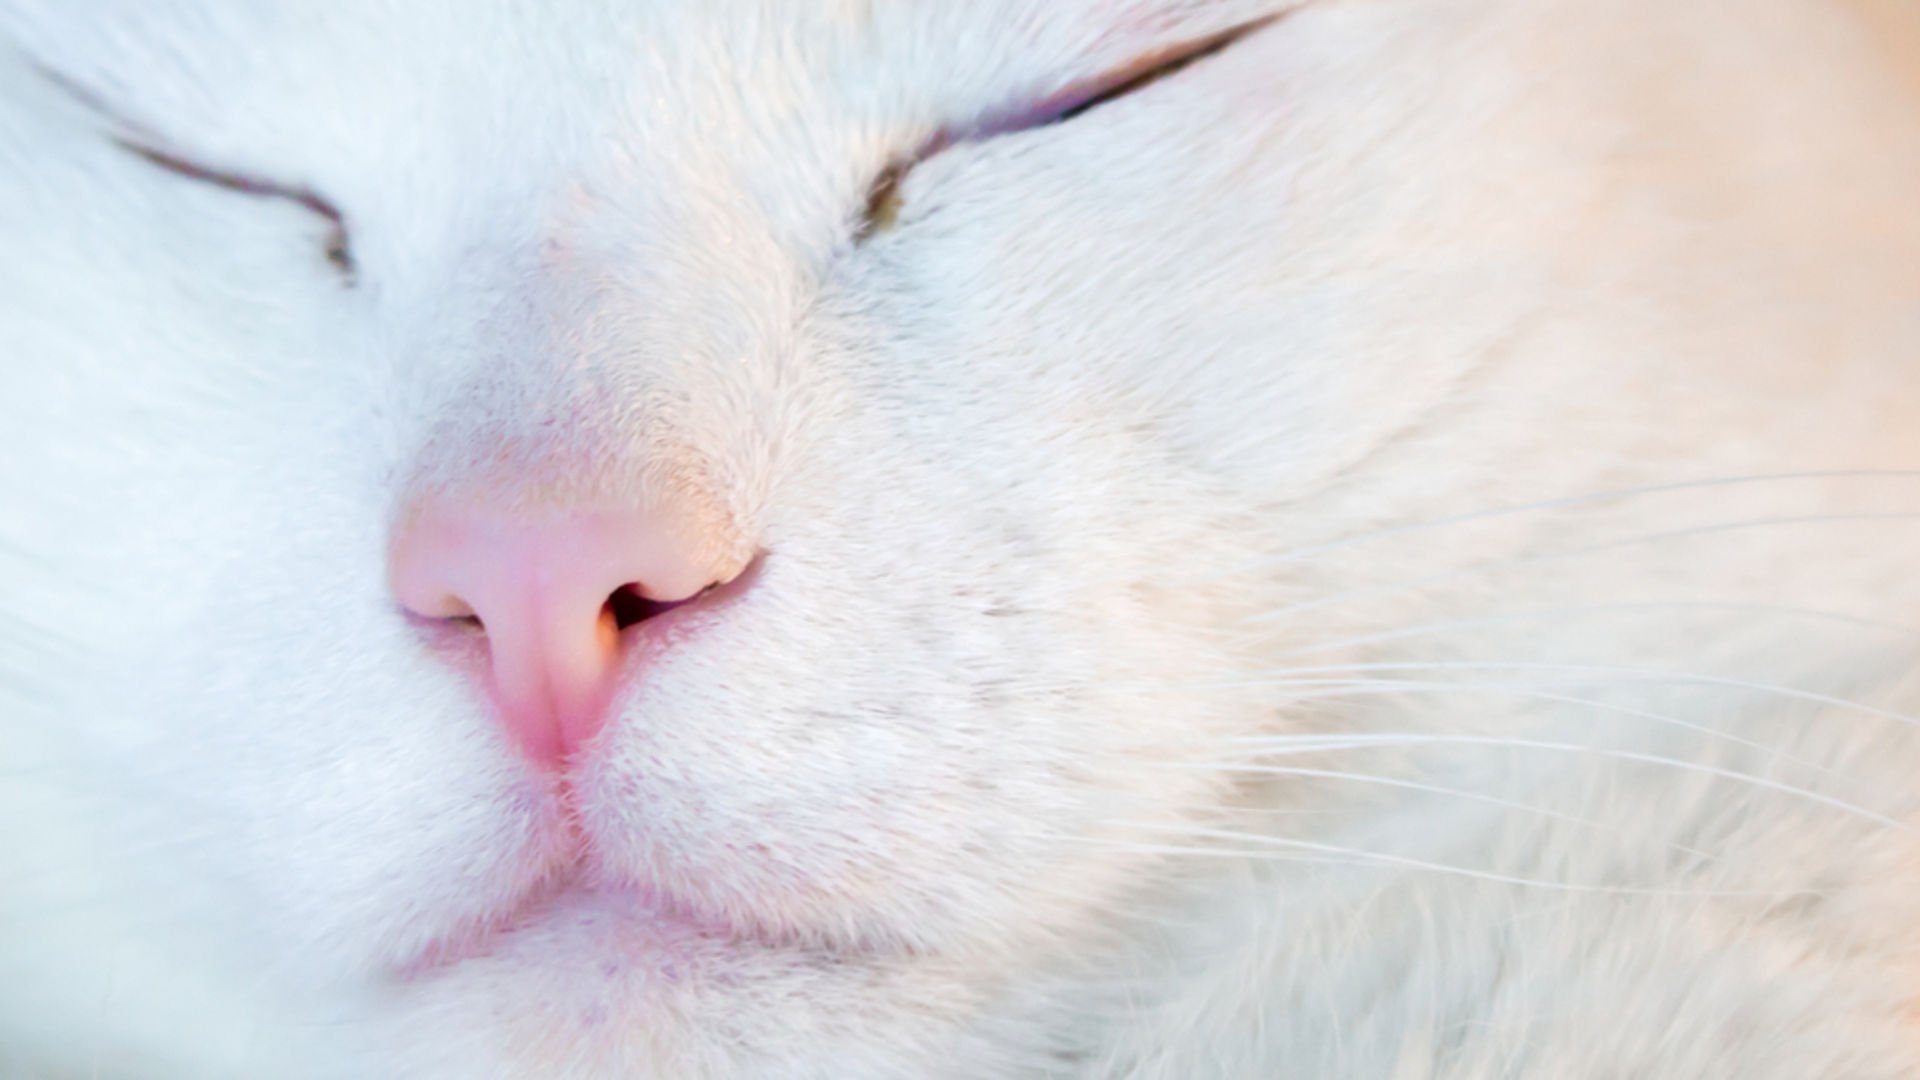 Аватарка нос кота закрытыми глазами белый